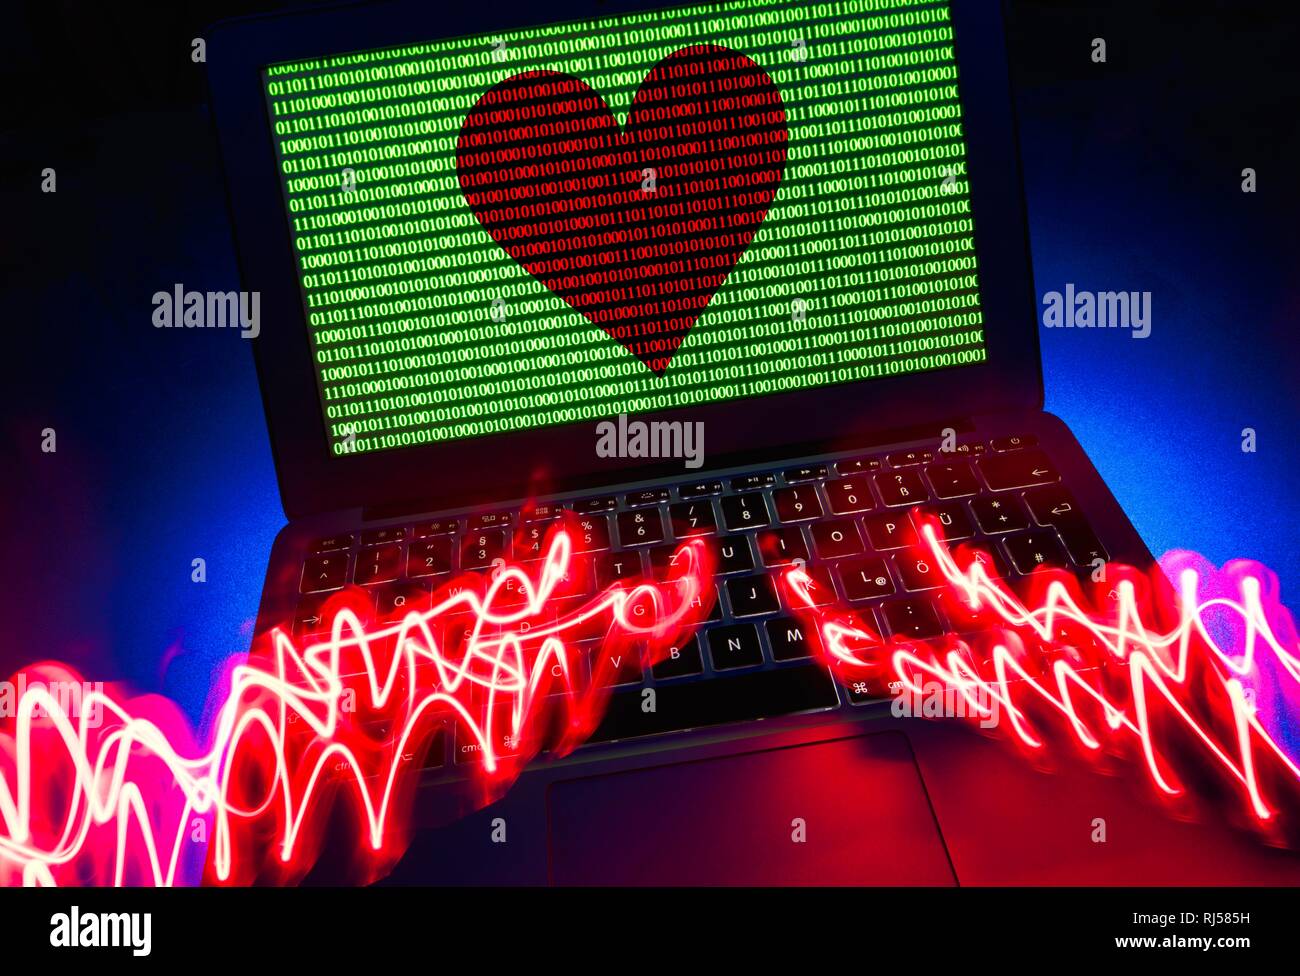 Schermo portatile, simbolo immagine agenzia di partenariato, dating agency, cuore rosso e i numeri binari sullo schermo, immagine simbolo la cibercriminalità Foto Stock